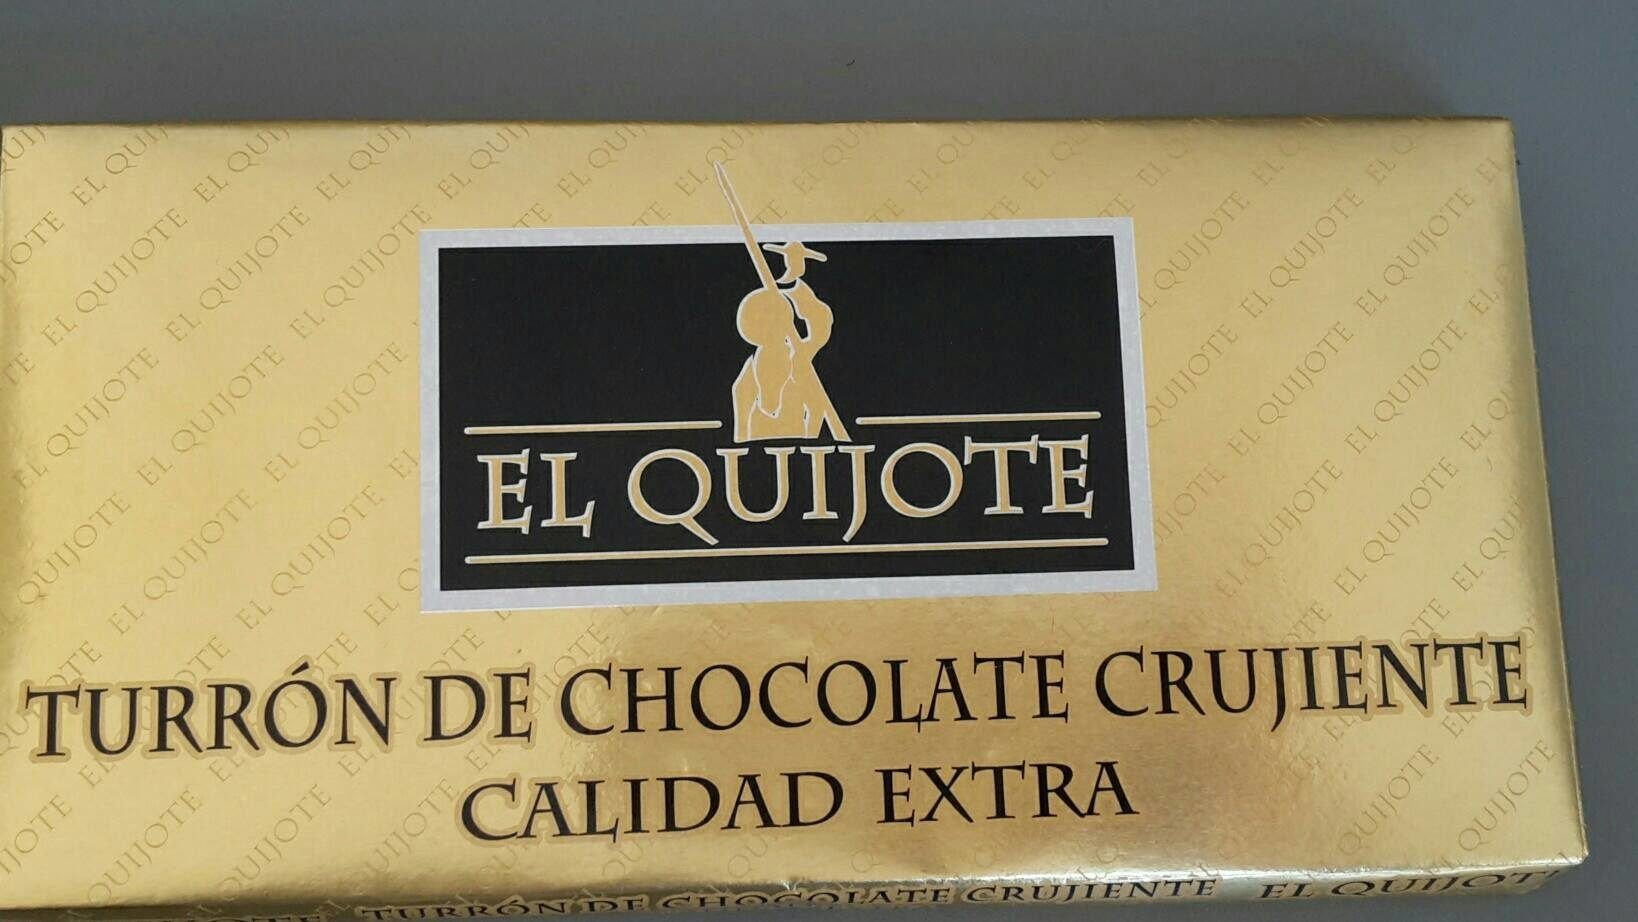 Turrón de chocolate crujiente calidad extra - Product - fr